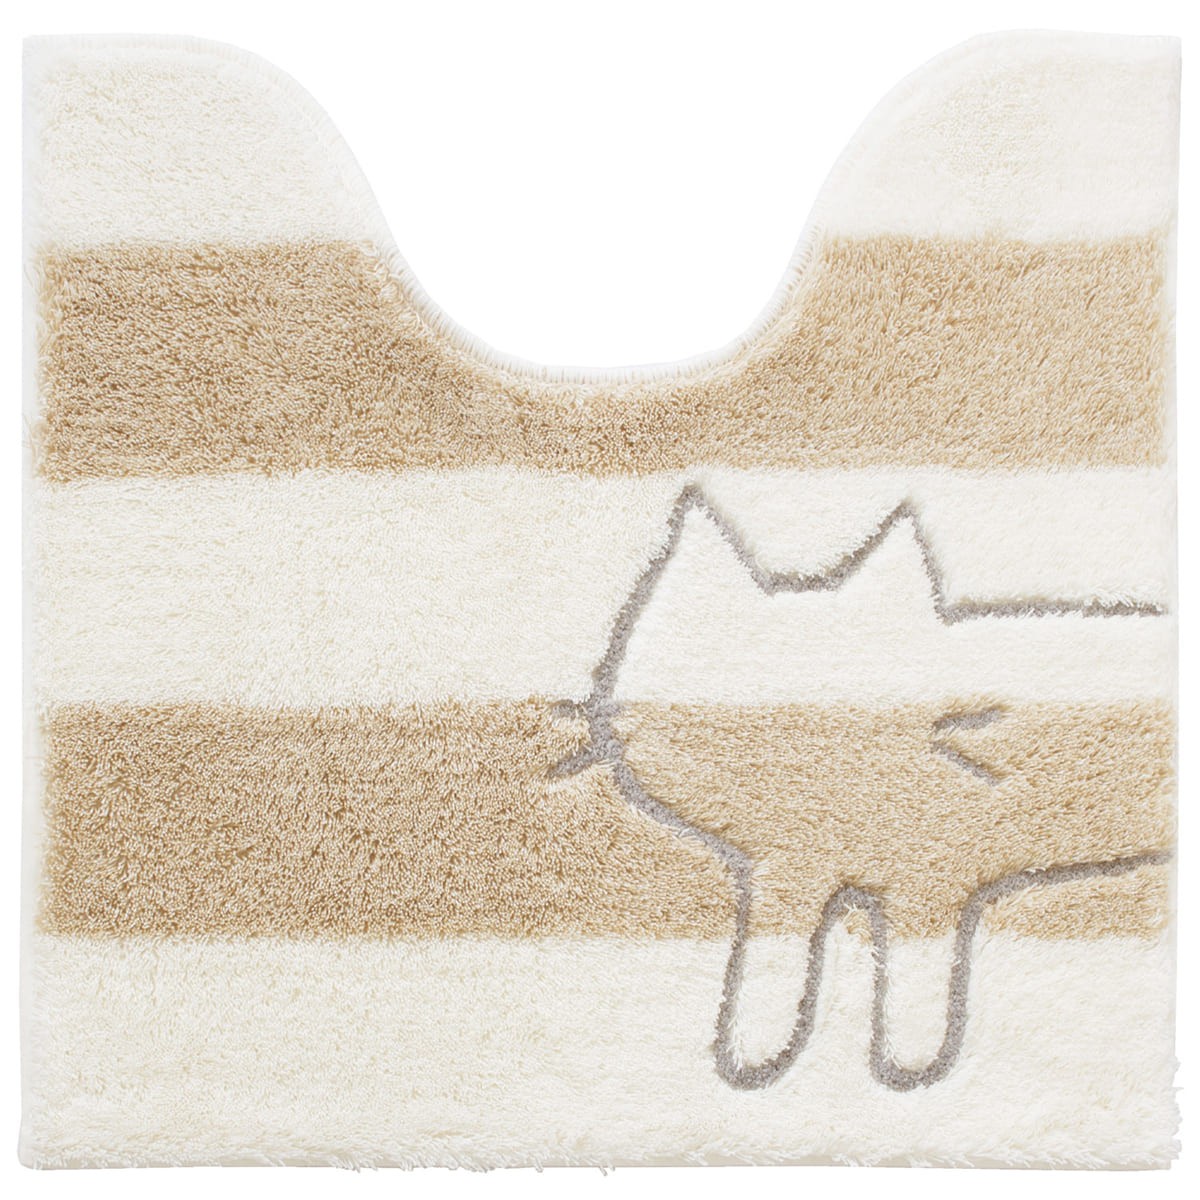 トイレマット 洗える 約60×60cm うちねこ ネコ ねこ 猫 トイレカバー マット おしゃれ ボーダー グレー ブルー ホワイト オカ